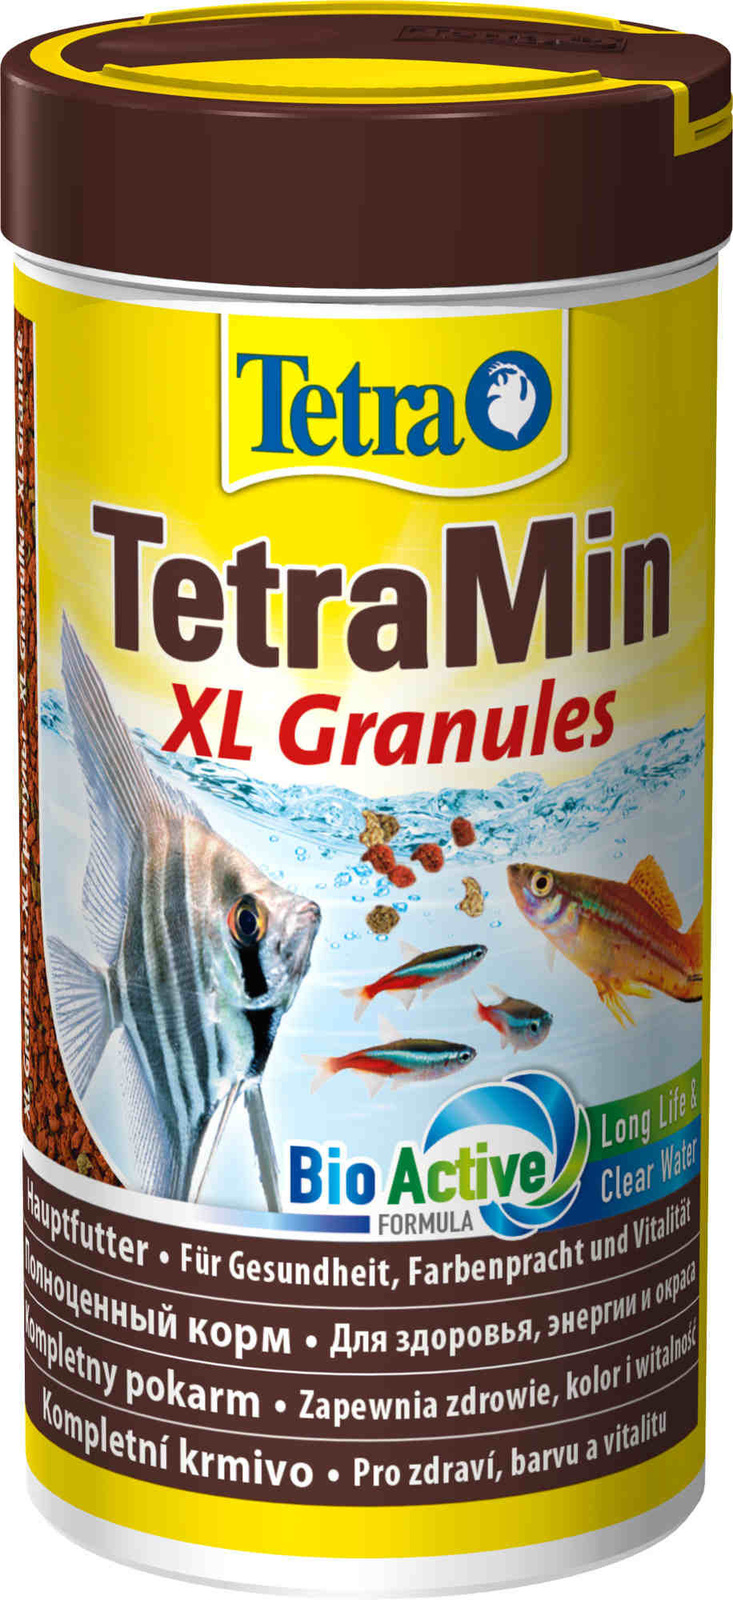 Tetra (корма) Tetra (корма) корм для всех видов крупных рыб, крупные гранулы (82 г) tetra корма tetra корма корм для всех видов крупных рыб крупные гранулы 82 г